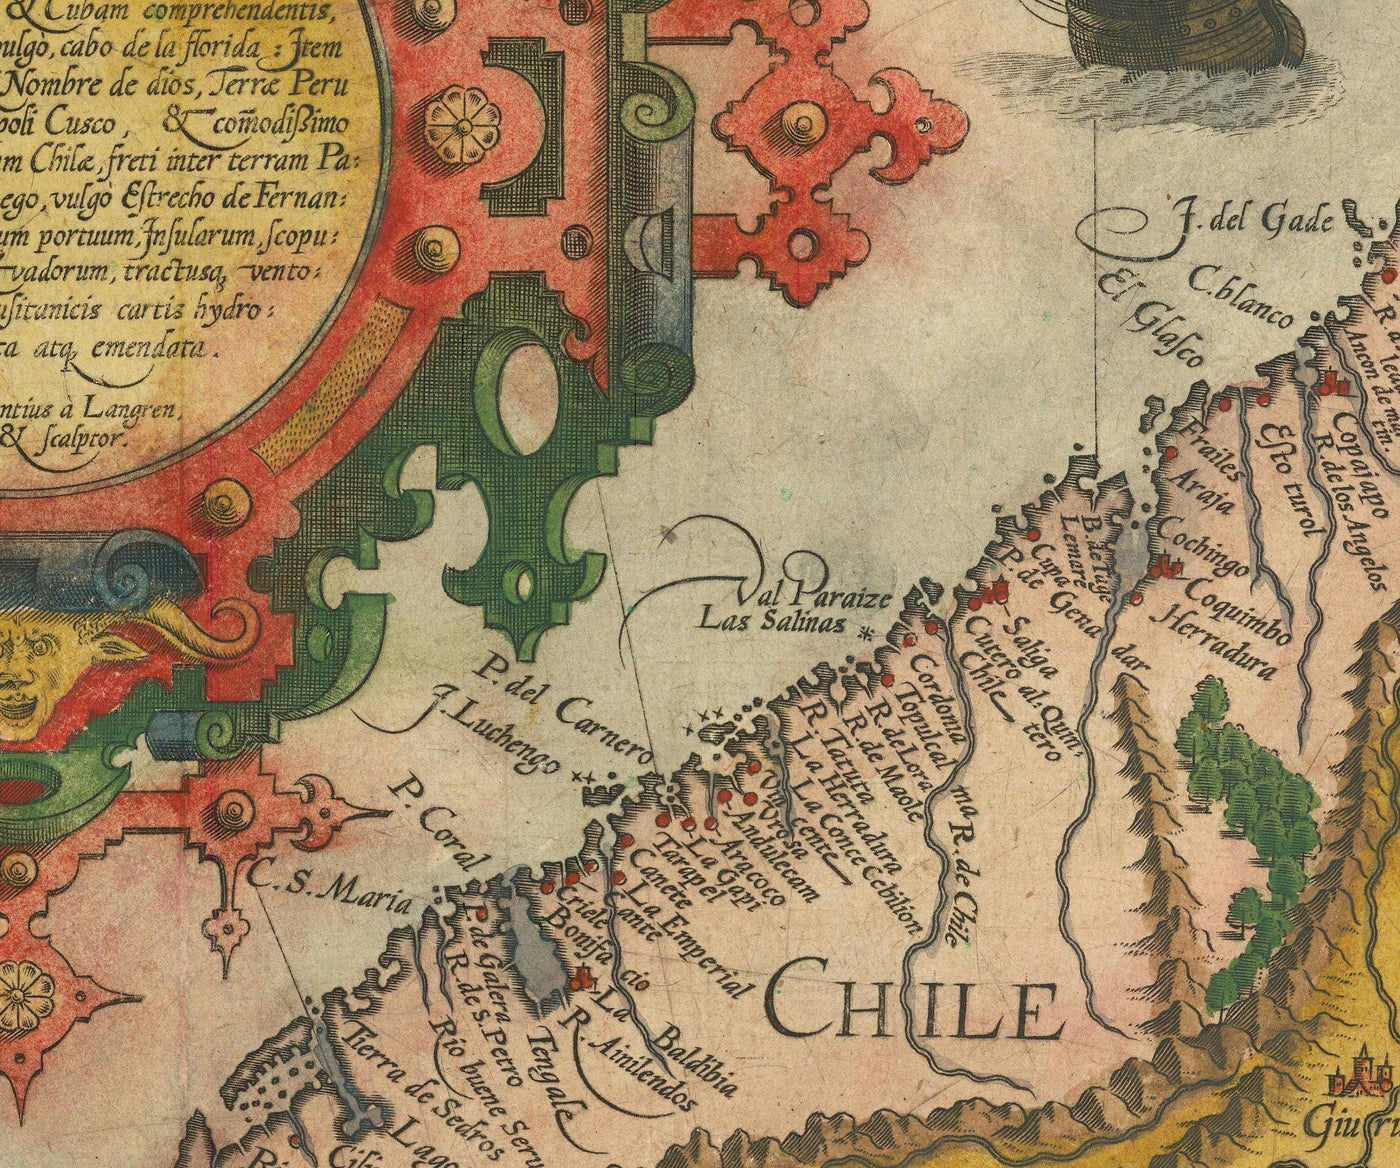 Alte Karte von Südamerika von Linschoten, 1596 - Brasilien, Peru, Chile, Karibik, Florida, Spanische & portugiesische Kolonien